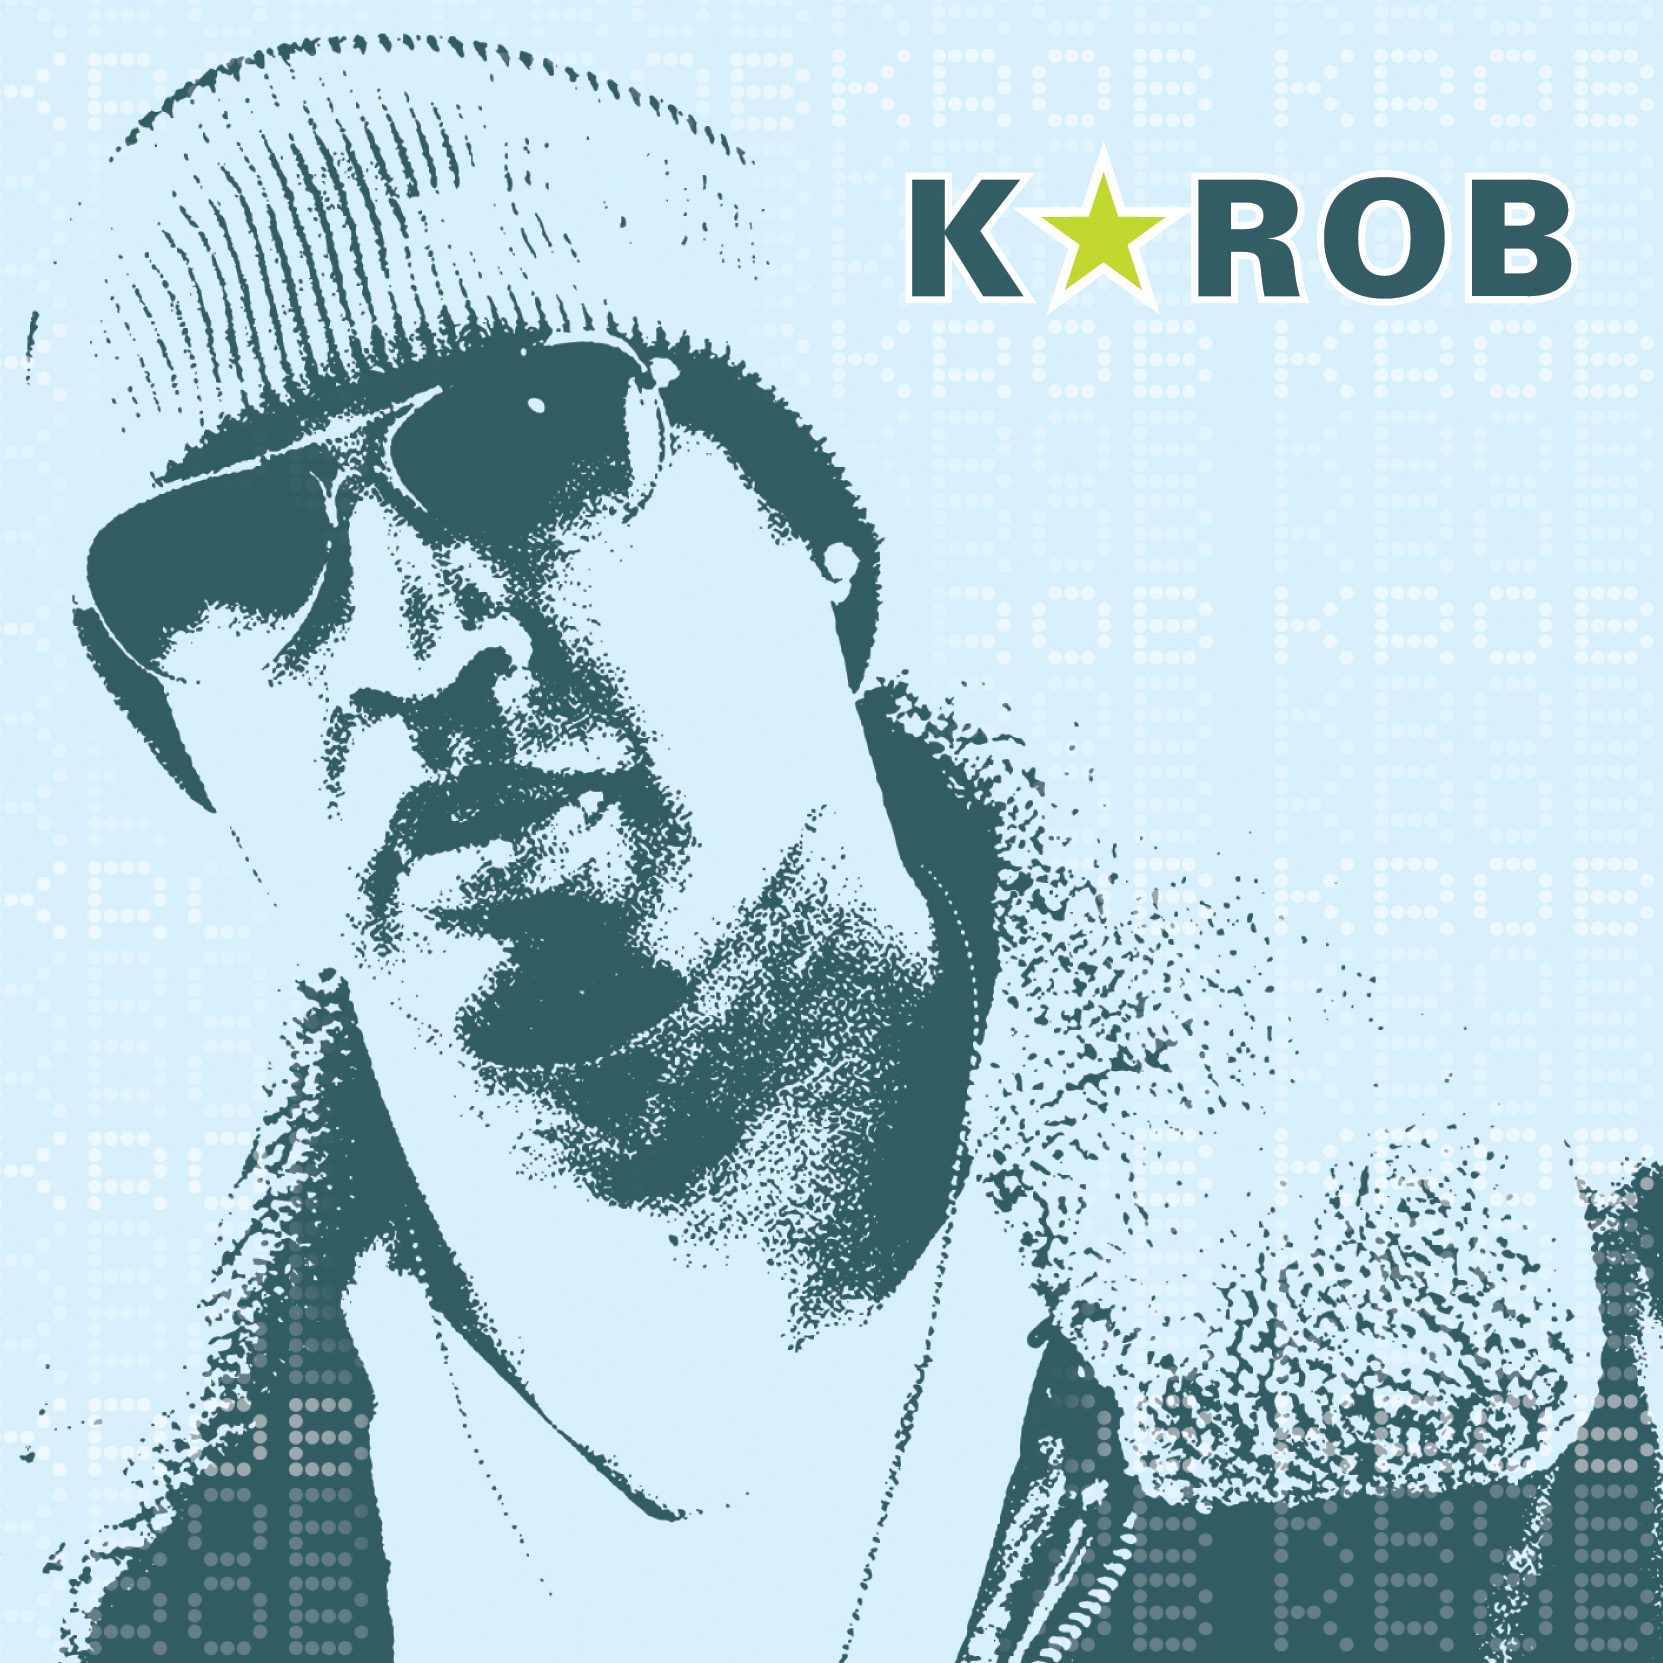 K-Rob music cover 2Nite